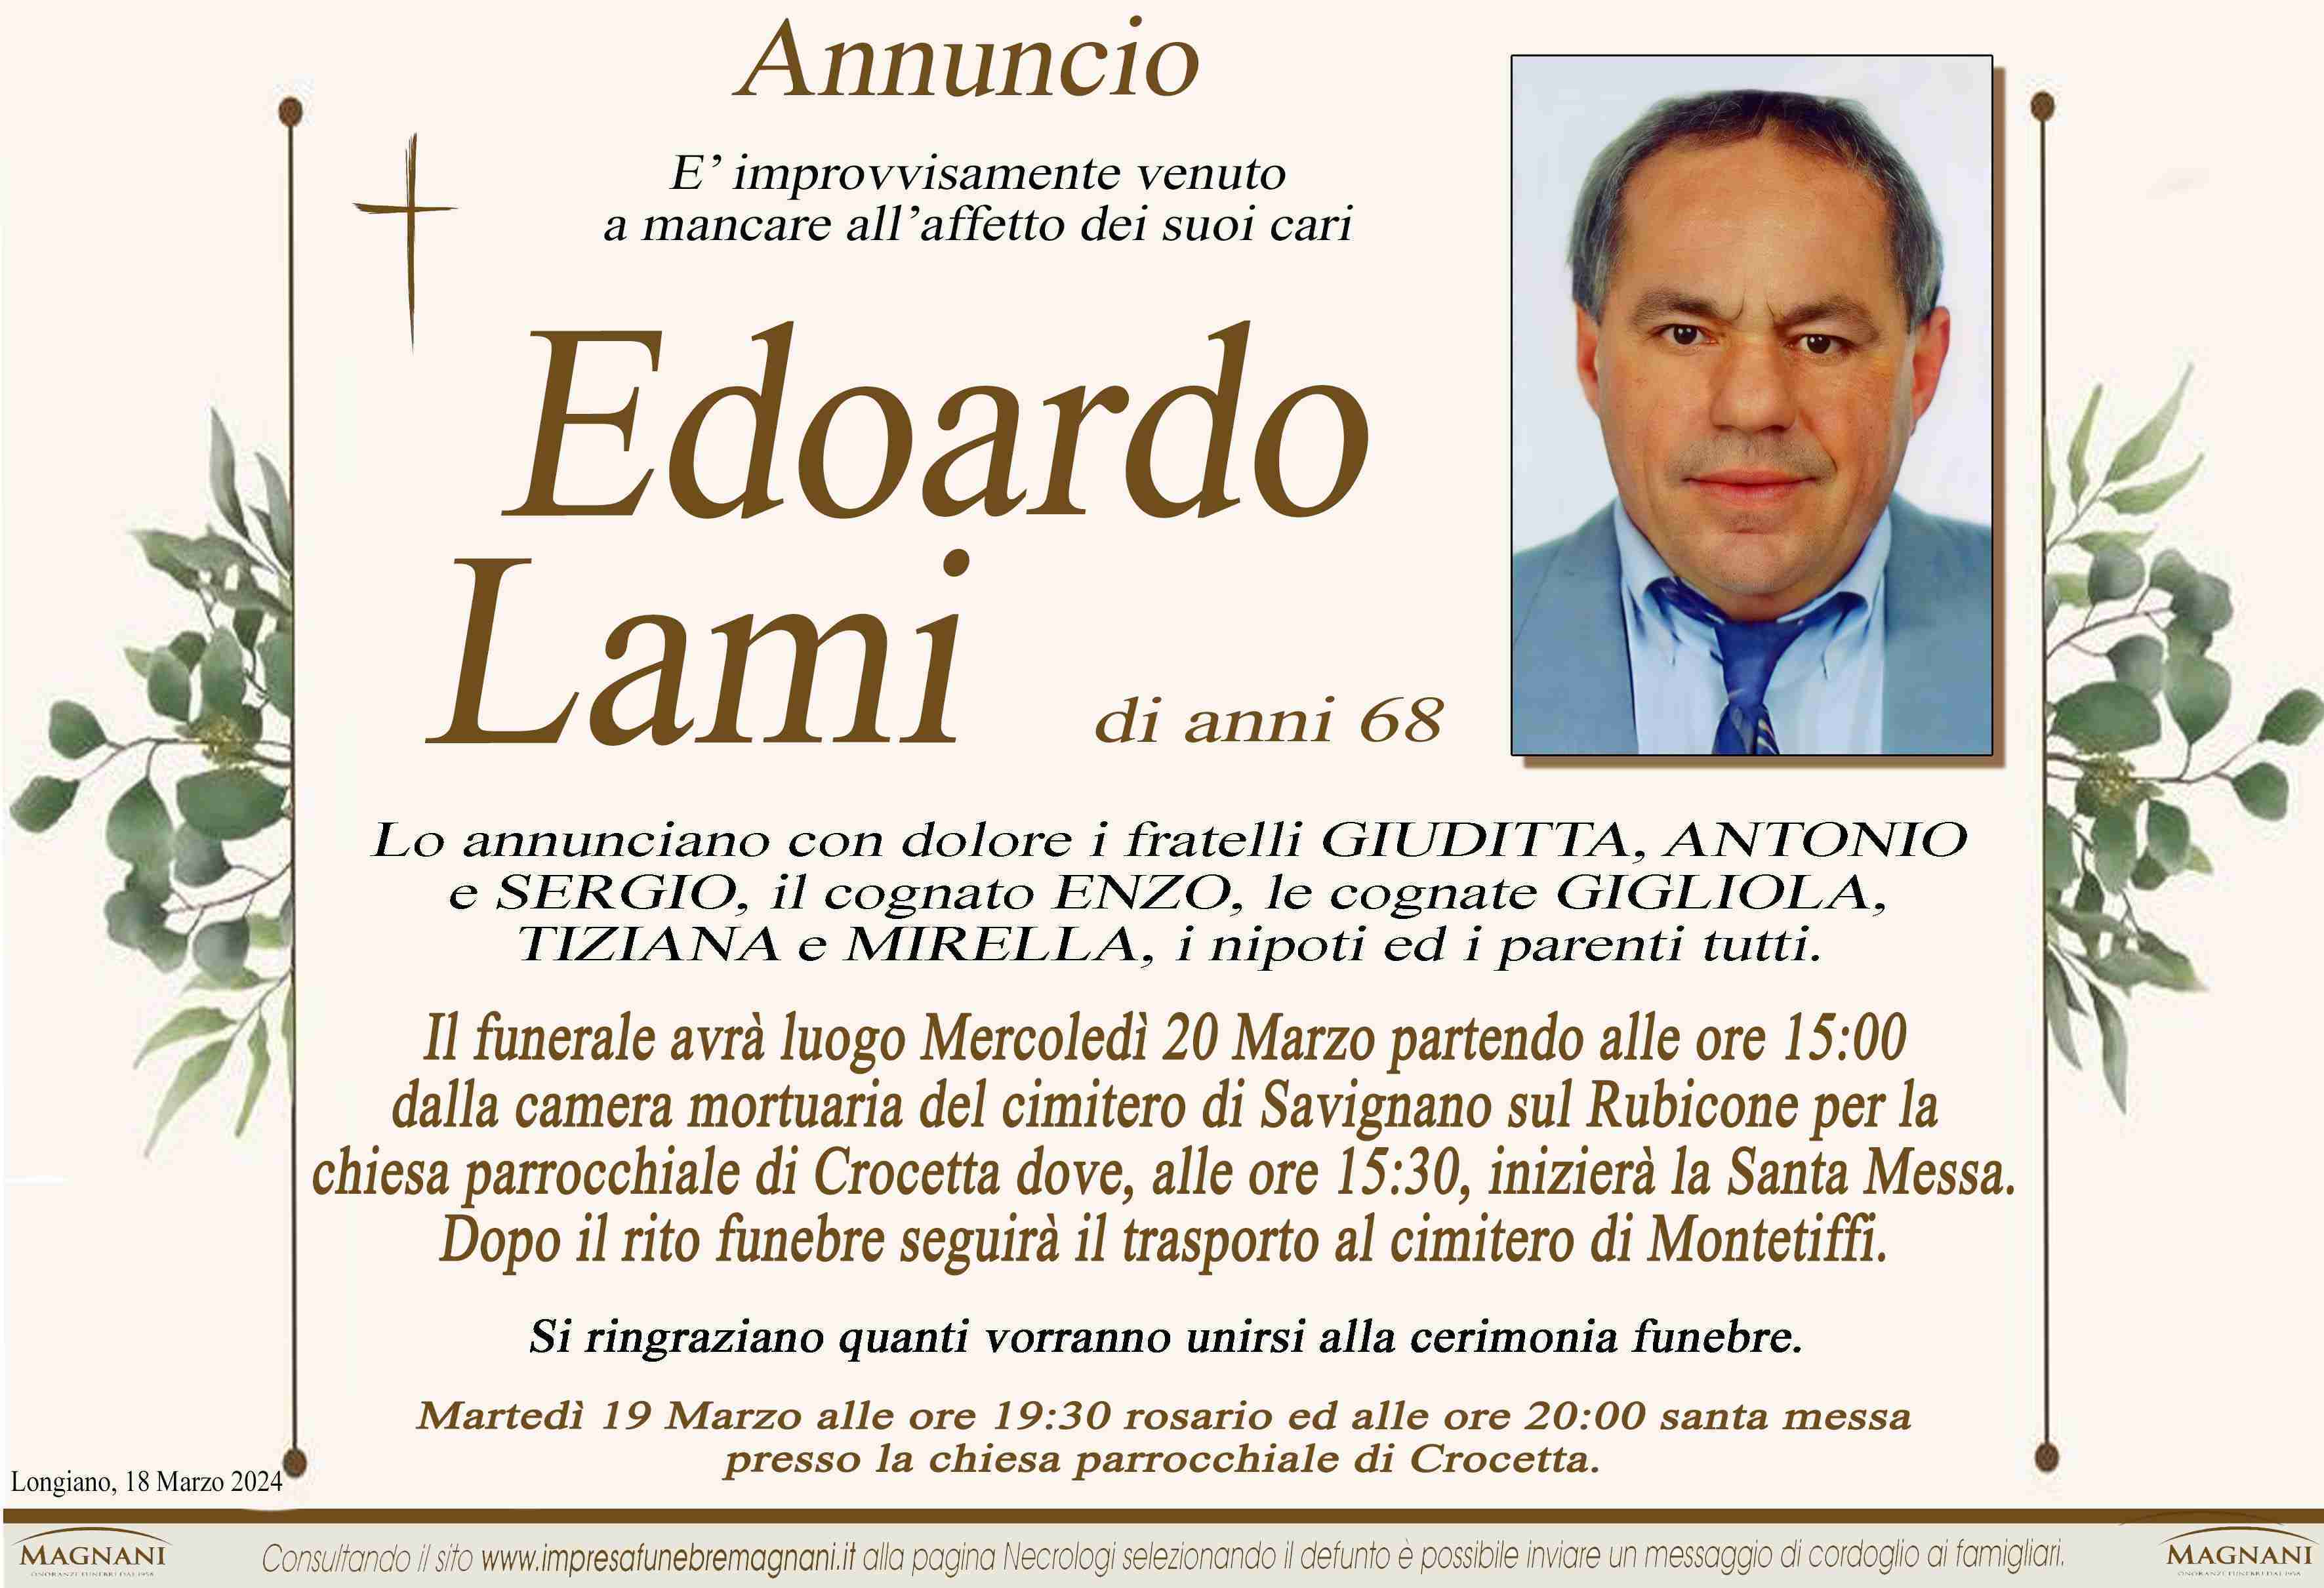 Edoardo Lami